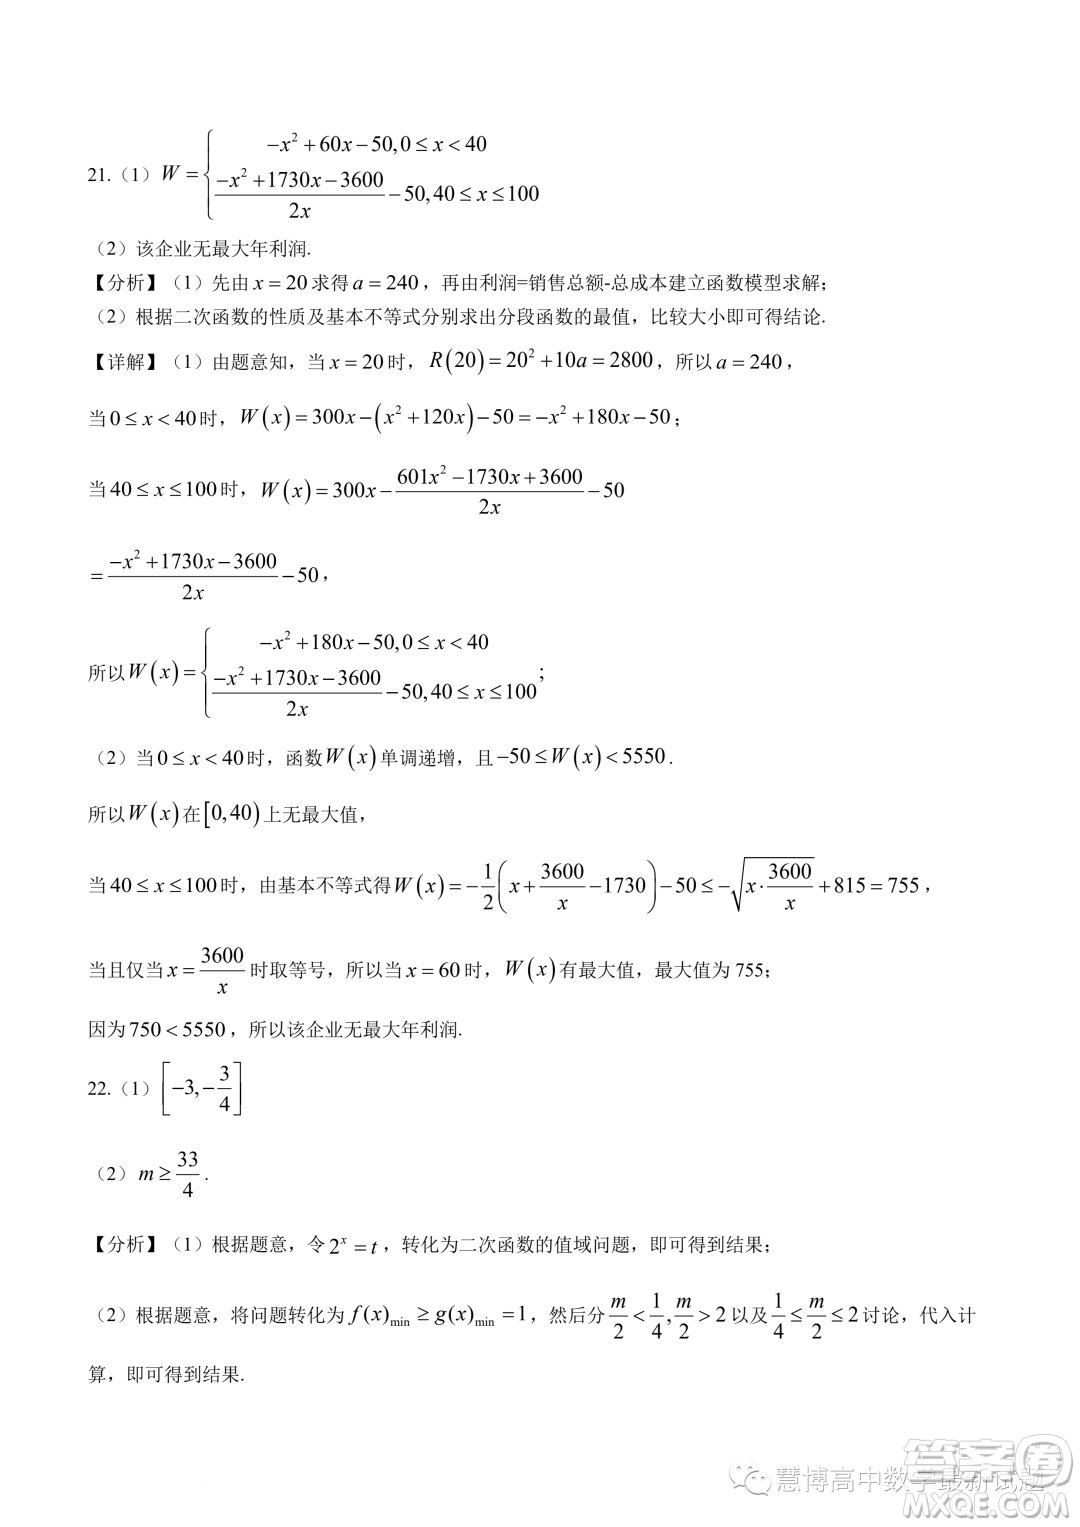 广东深圳大学附属实验中学2023-2024学年高一上学期阶段考试数学试卷答案